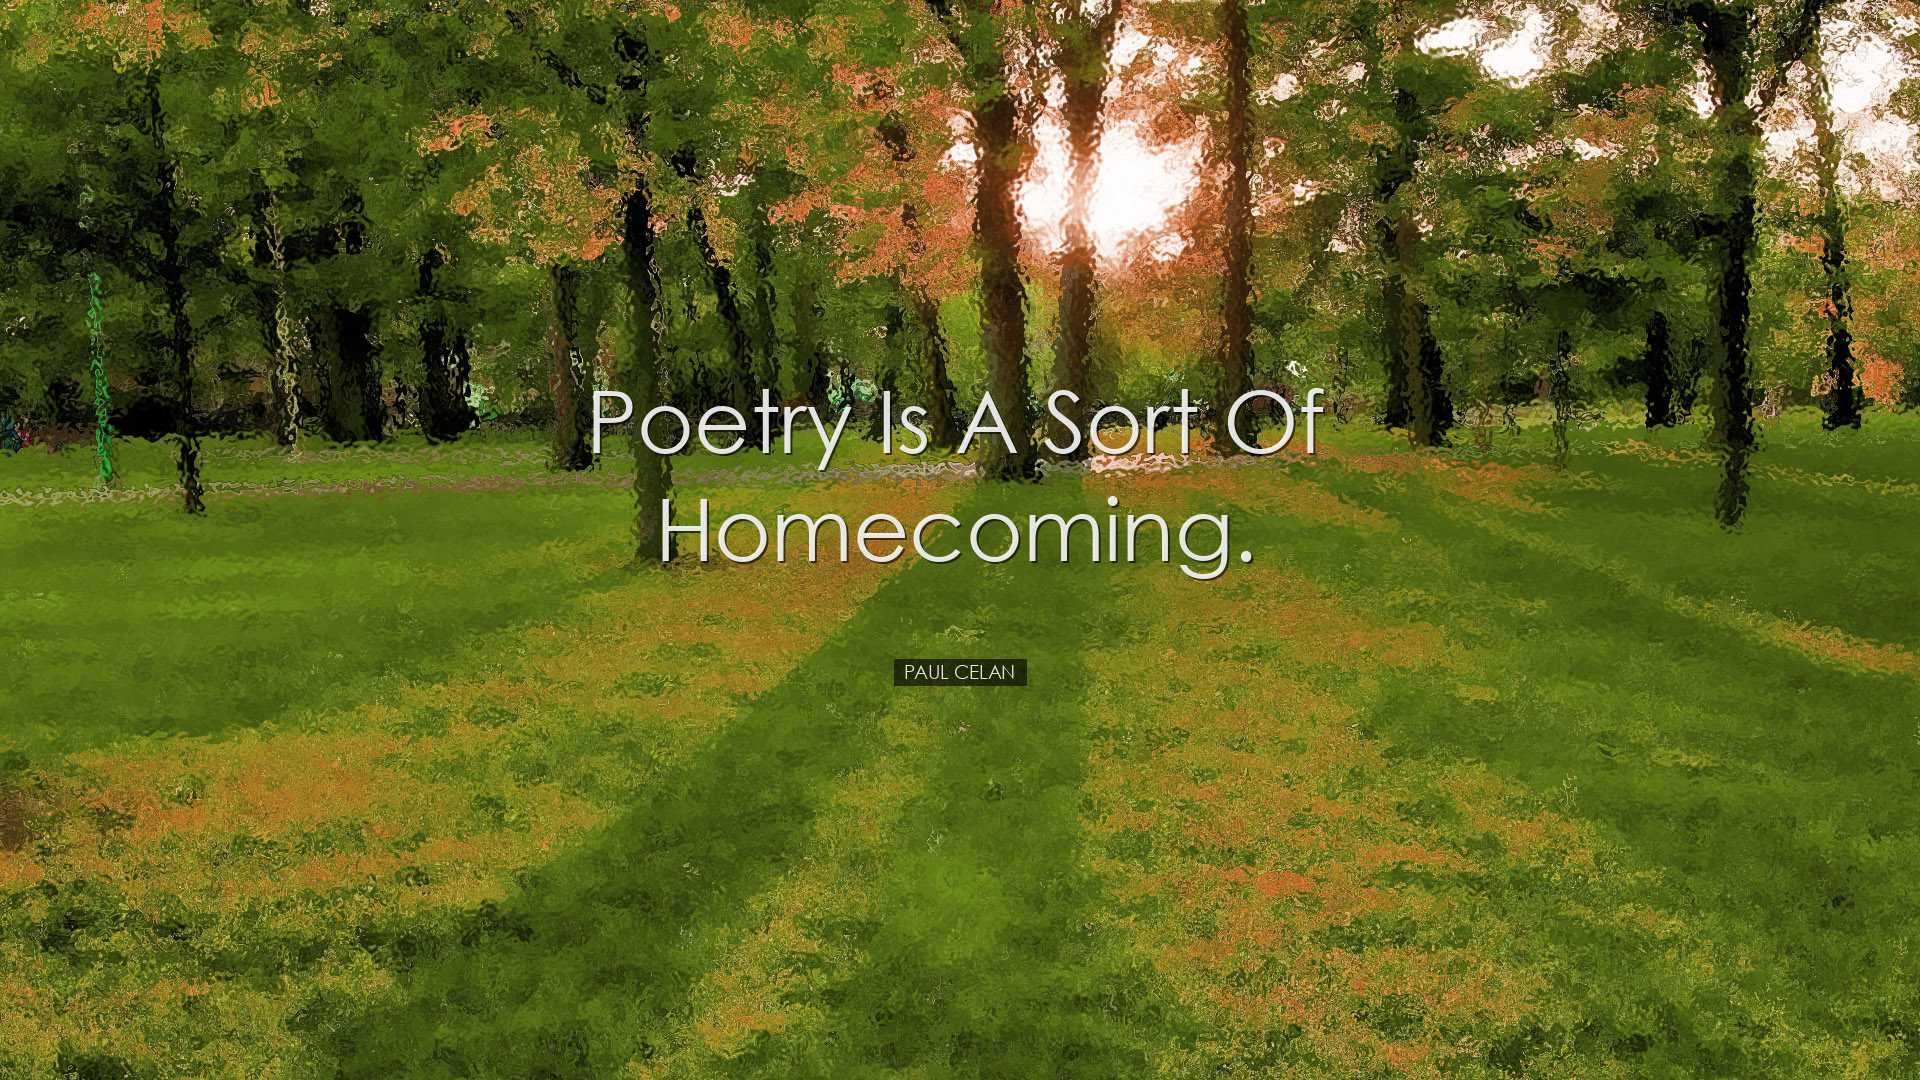 Poetry is a sort of homecoming. - Paul Celan